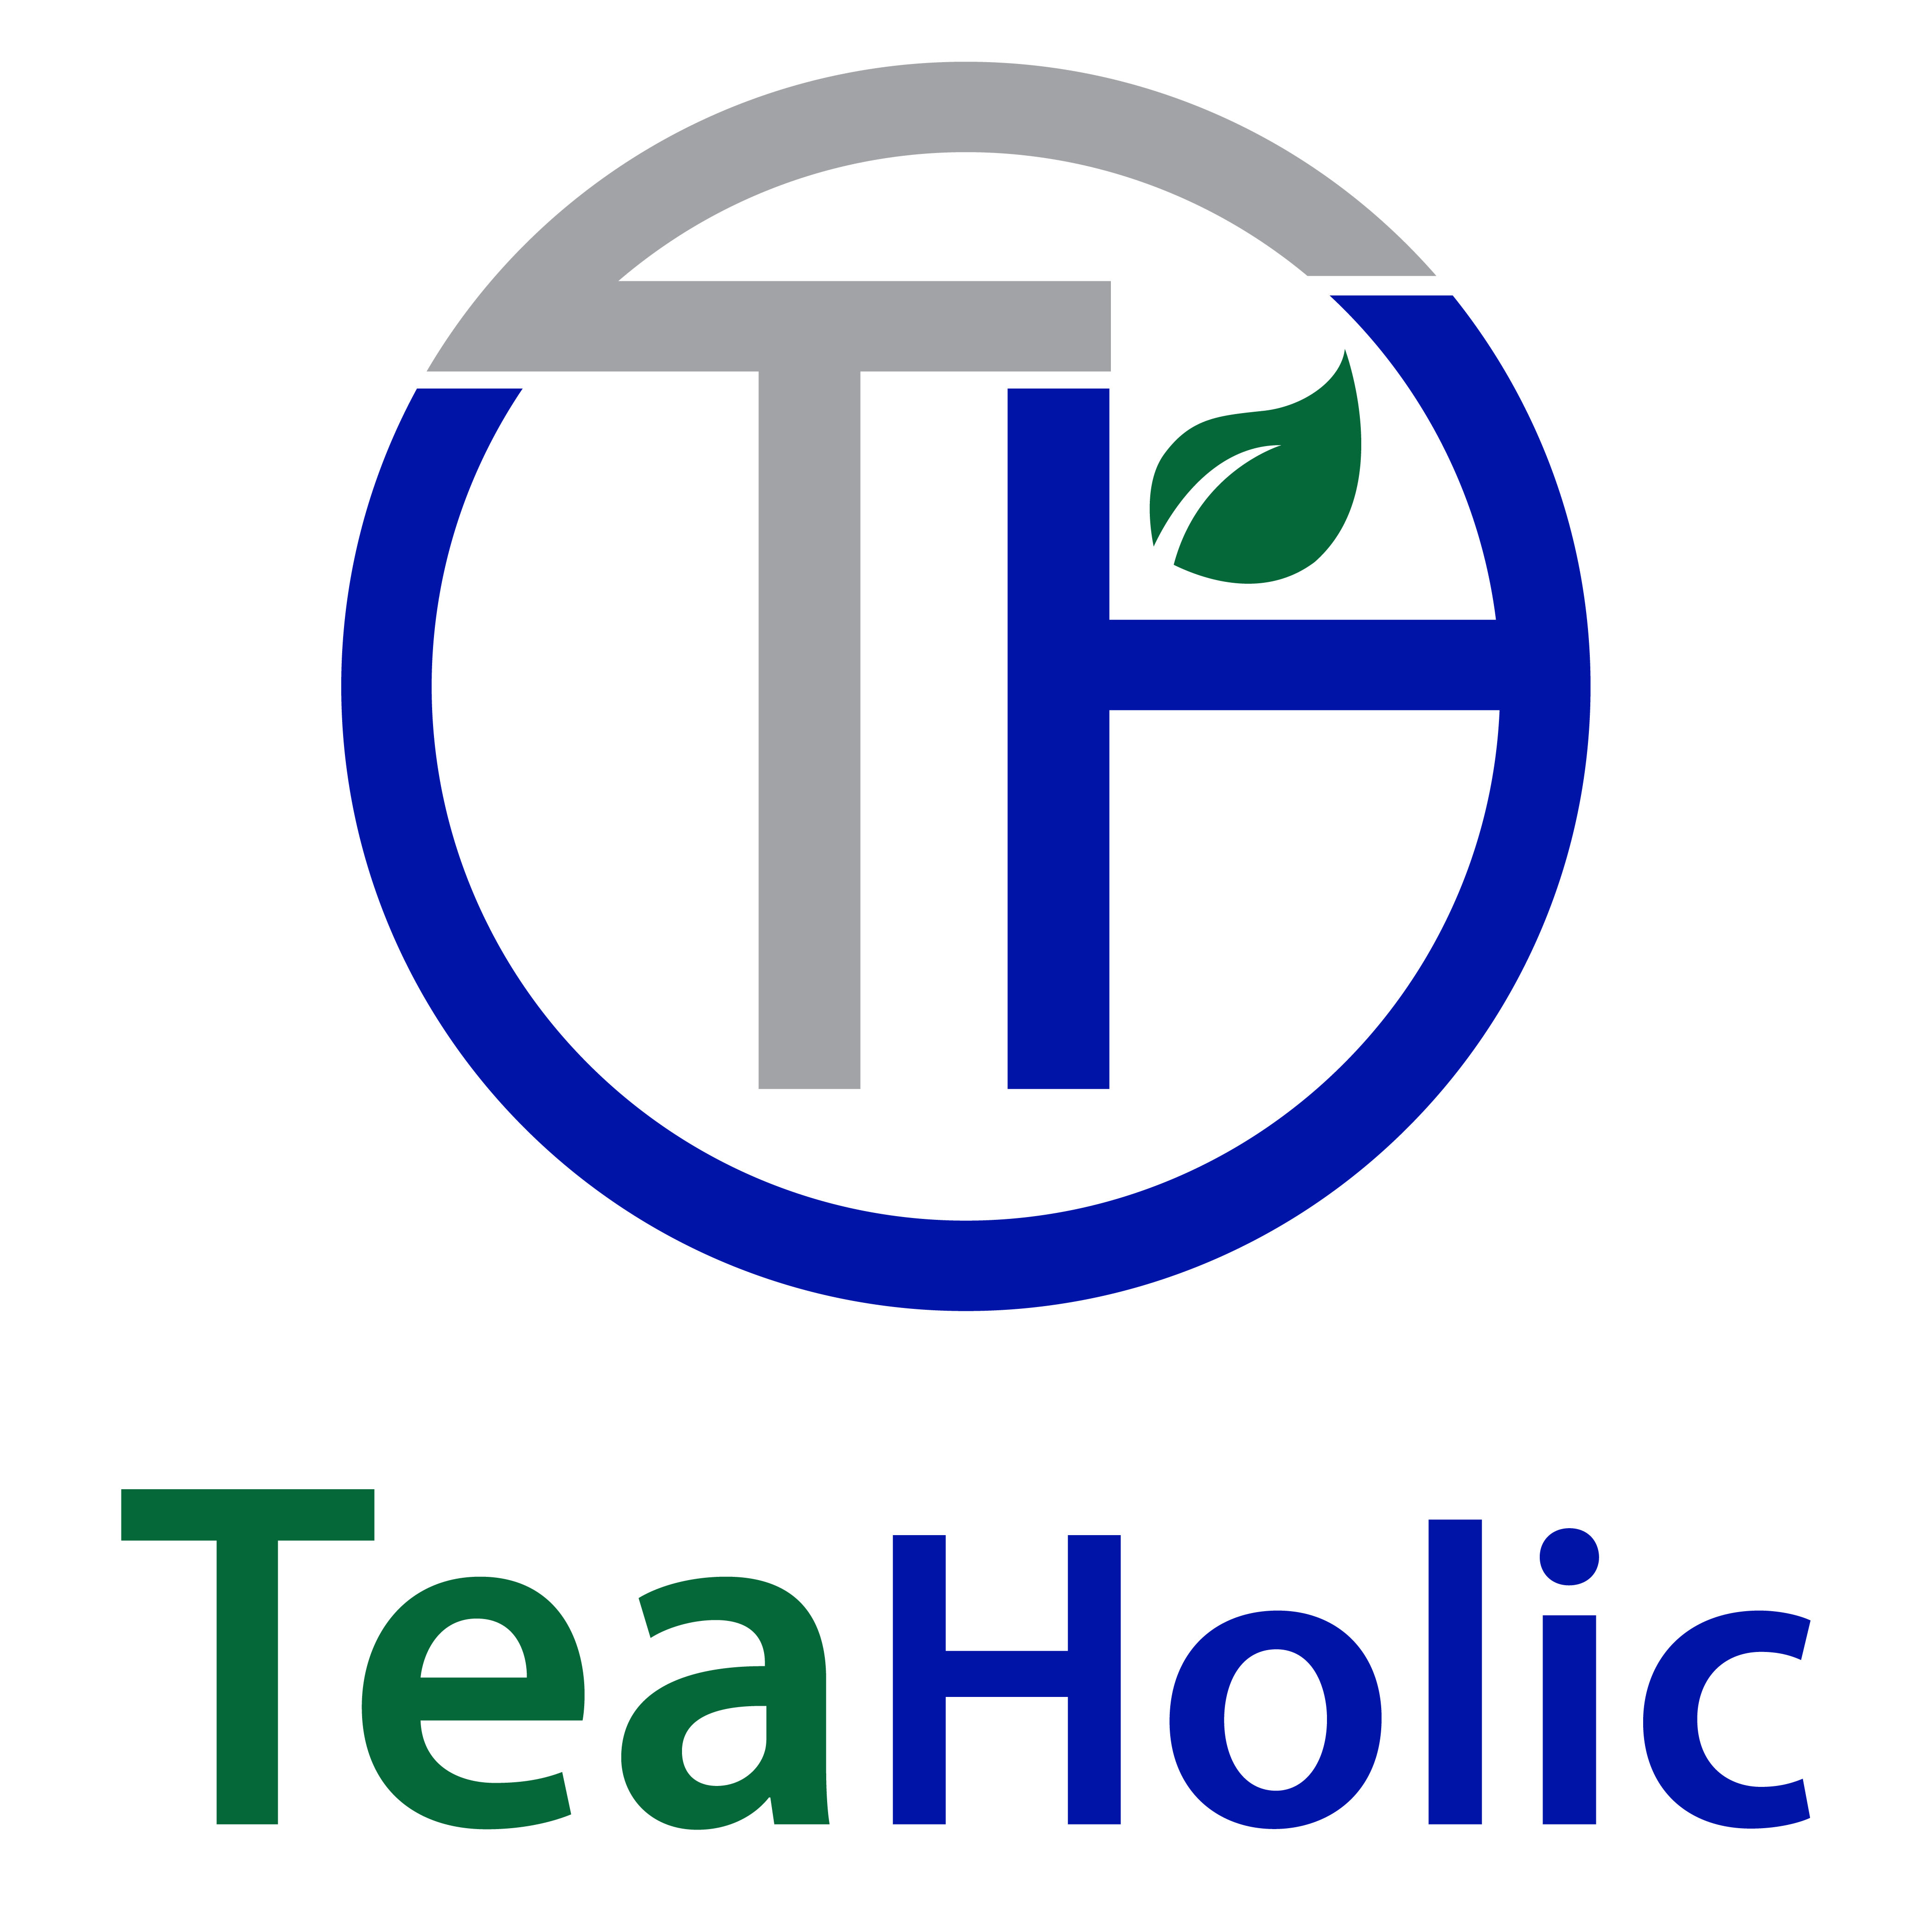 TeaHolic